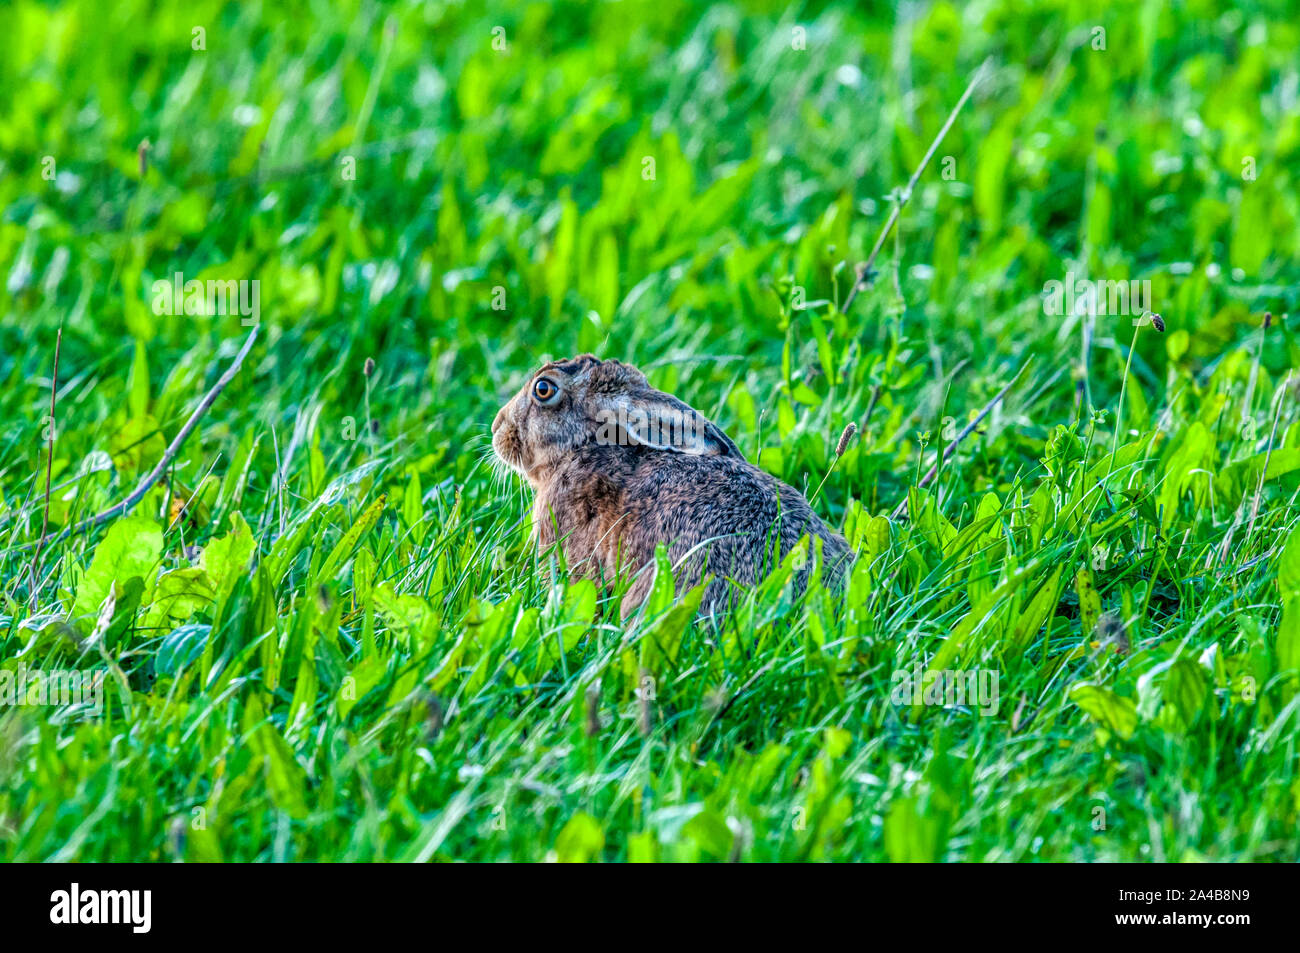 European hare, Lepus europaeus. Stock Photo